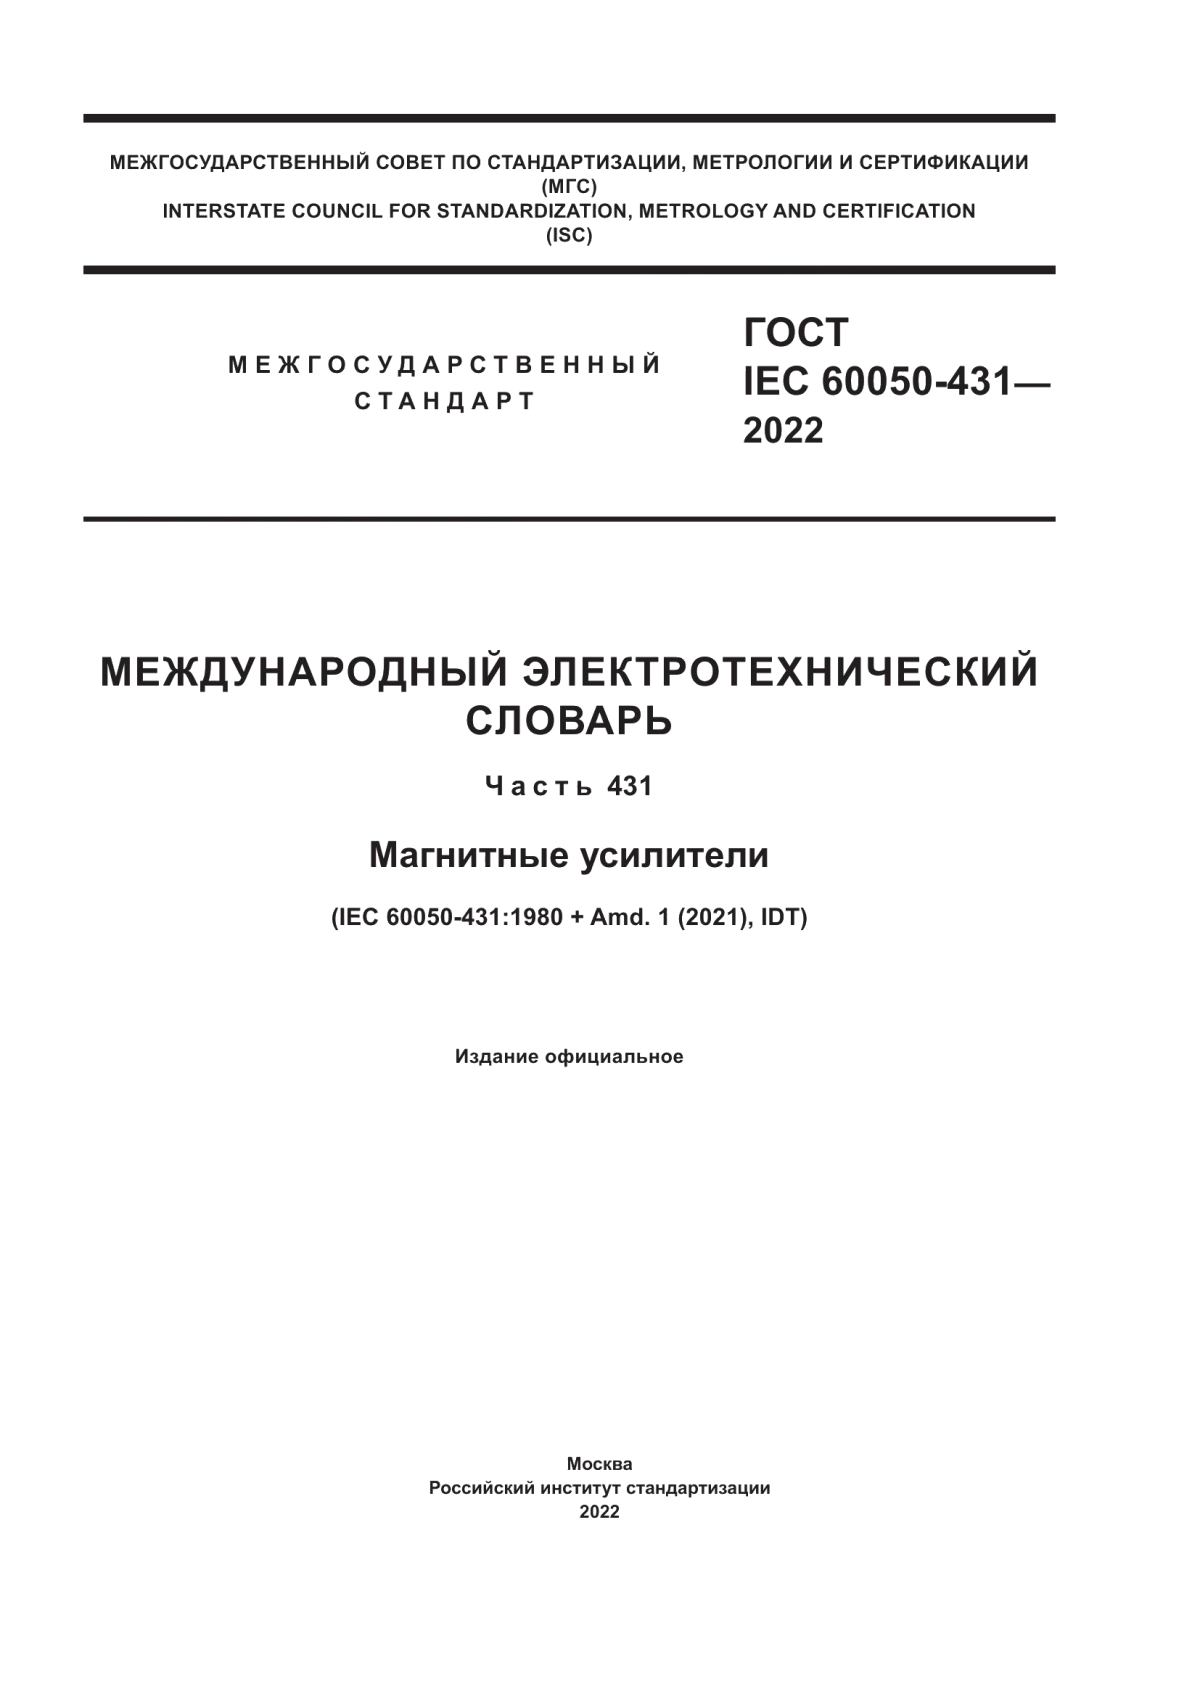 ГОСТ IEC 60050-431-2022 Международный электротехнический словарь. Часть 431. Магнитные усилители